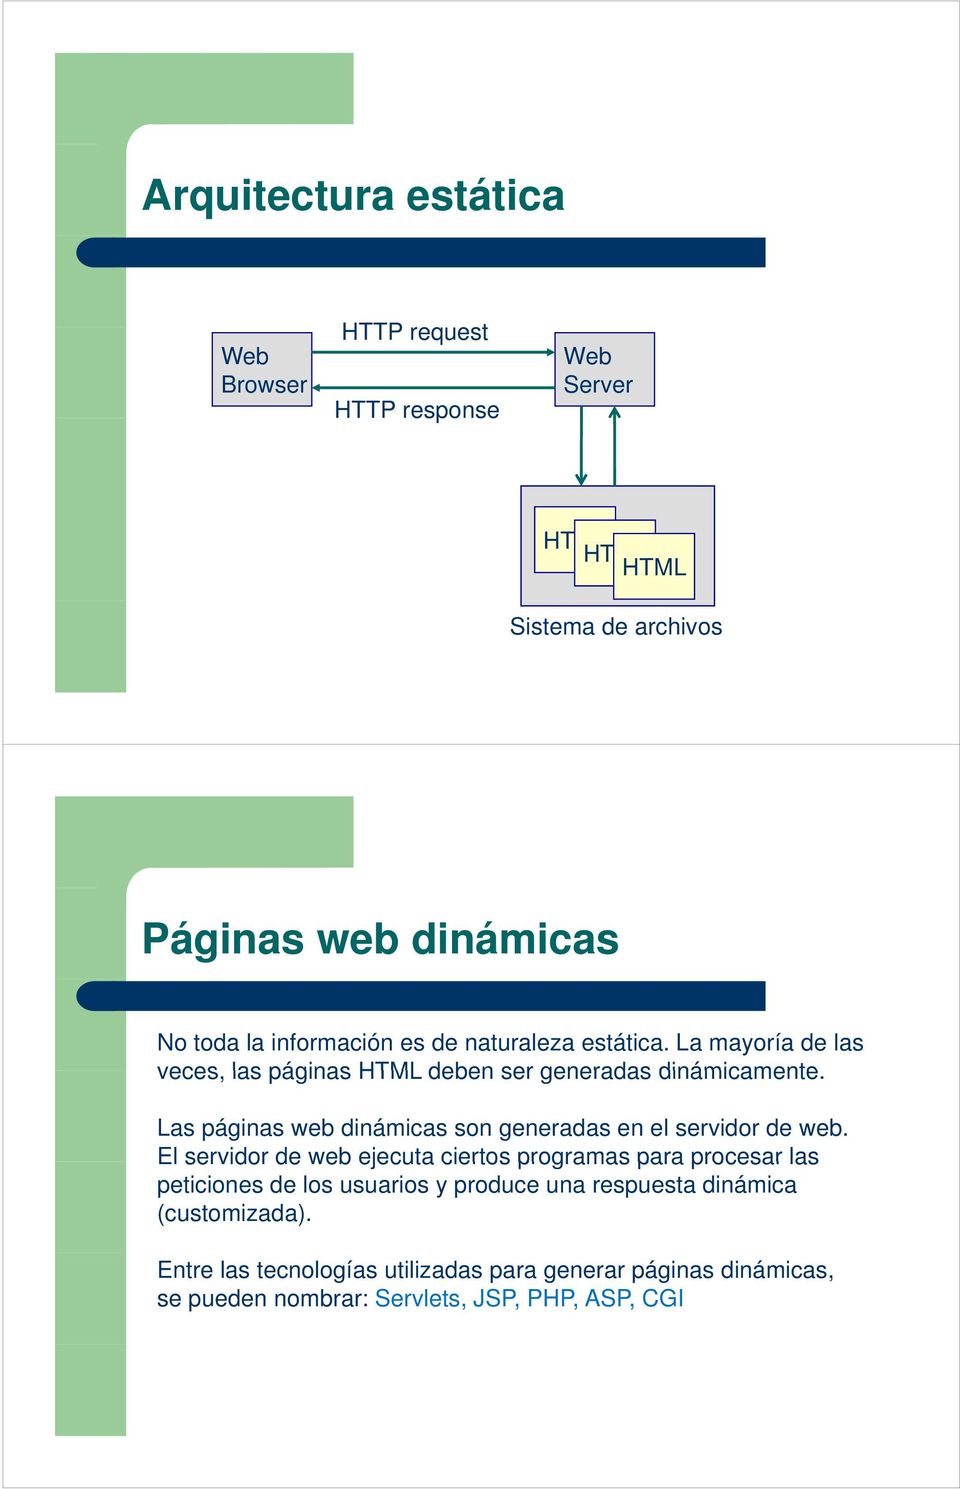 Las páginas web dinámicas son generadas en el servidor de web.